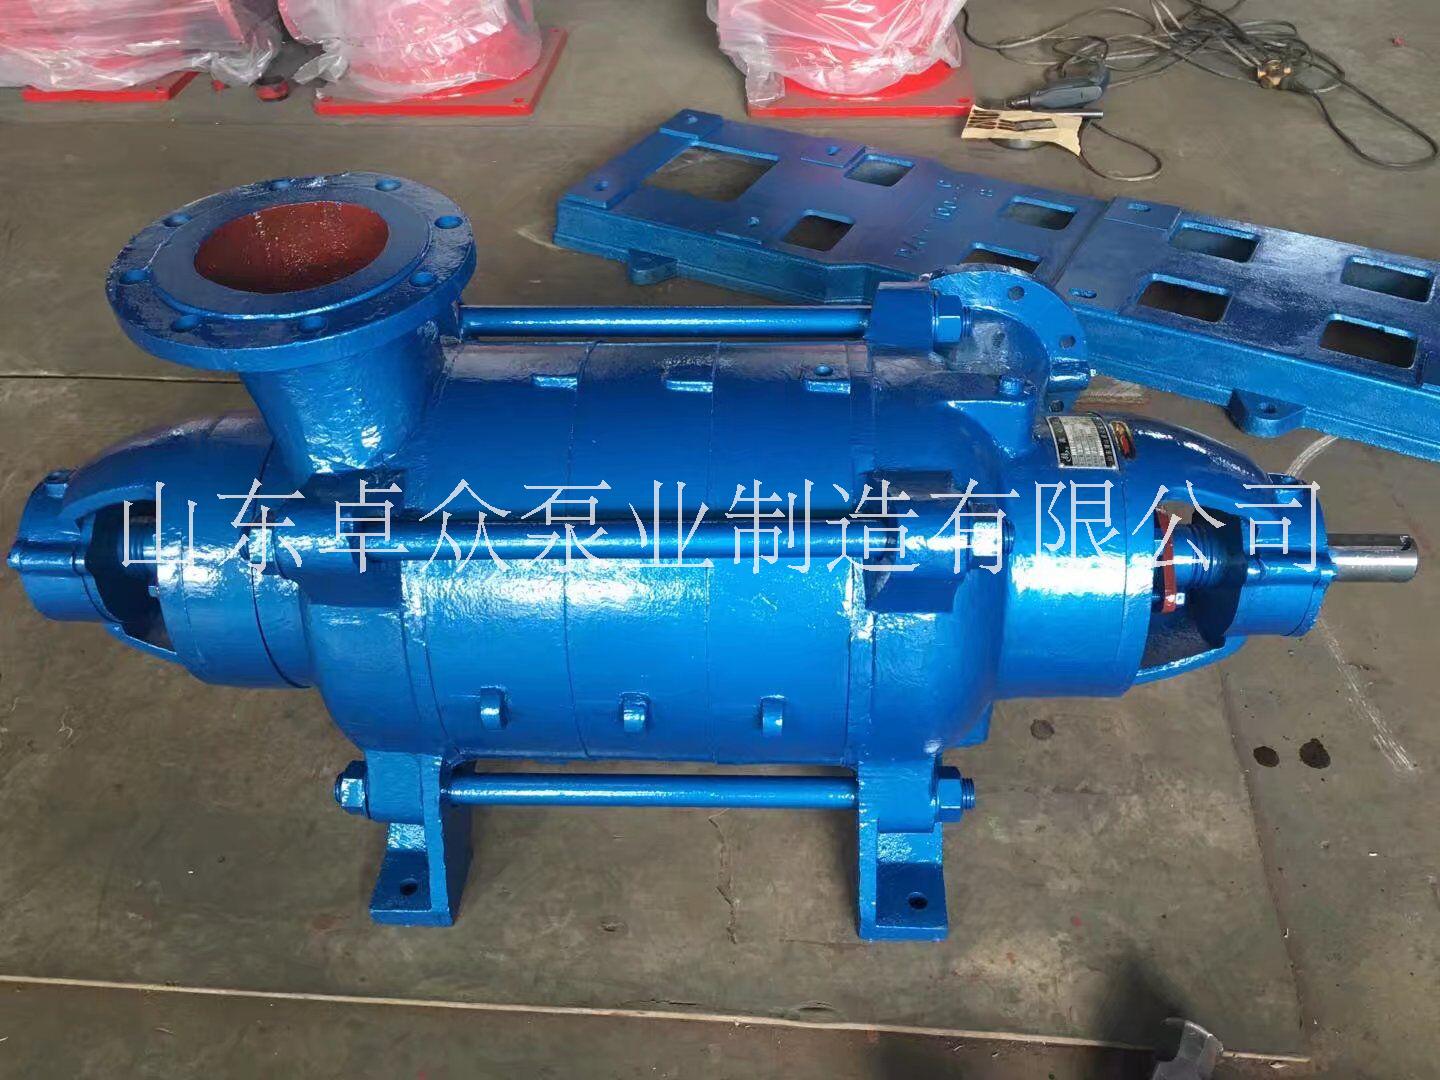 山东卓众泵业生产 DA1系列多级泵厂家 质量稳定